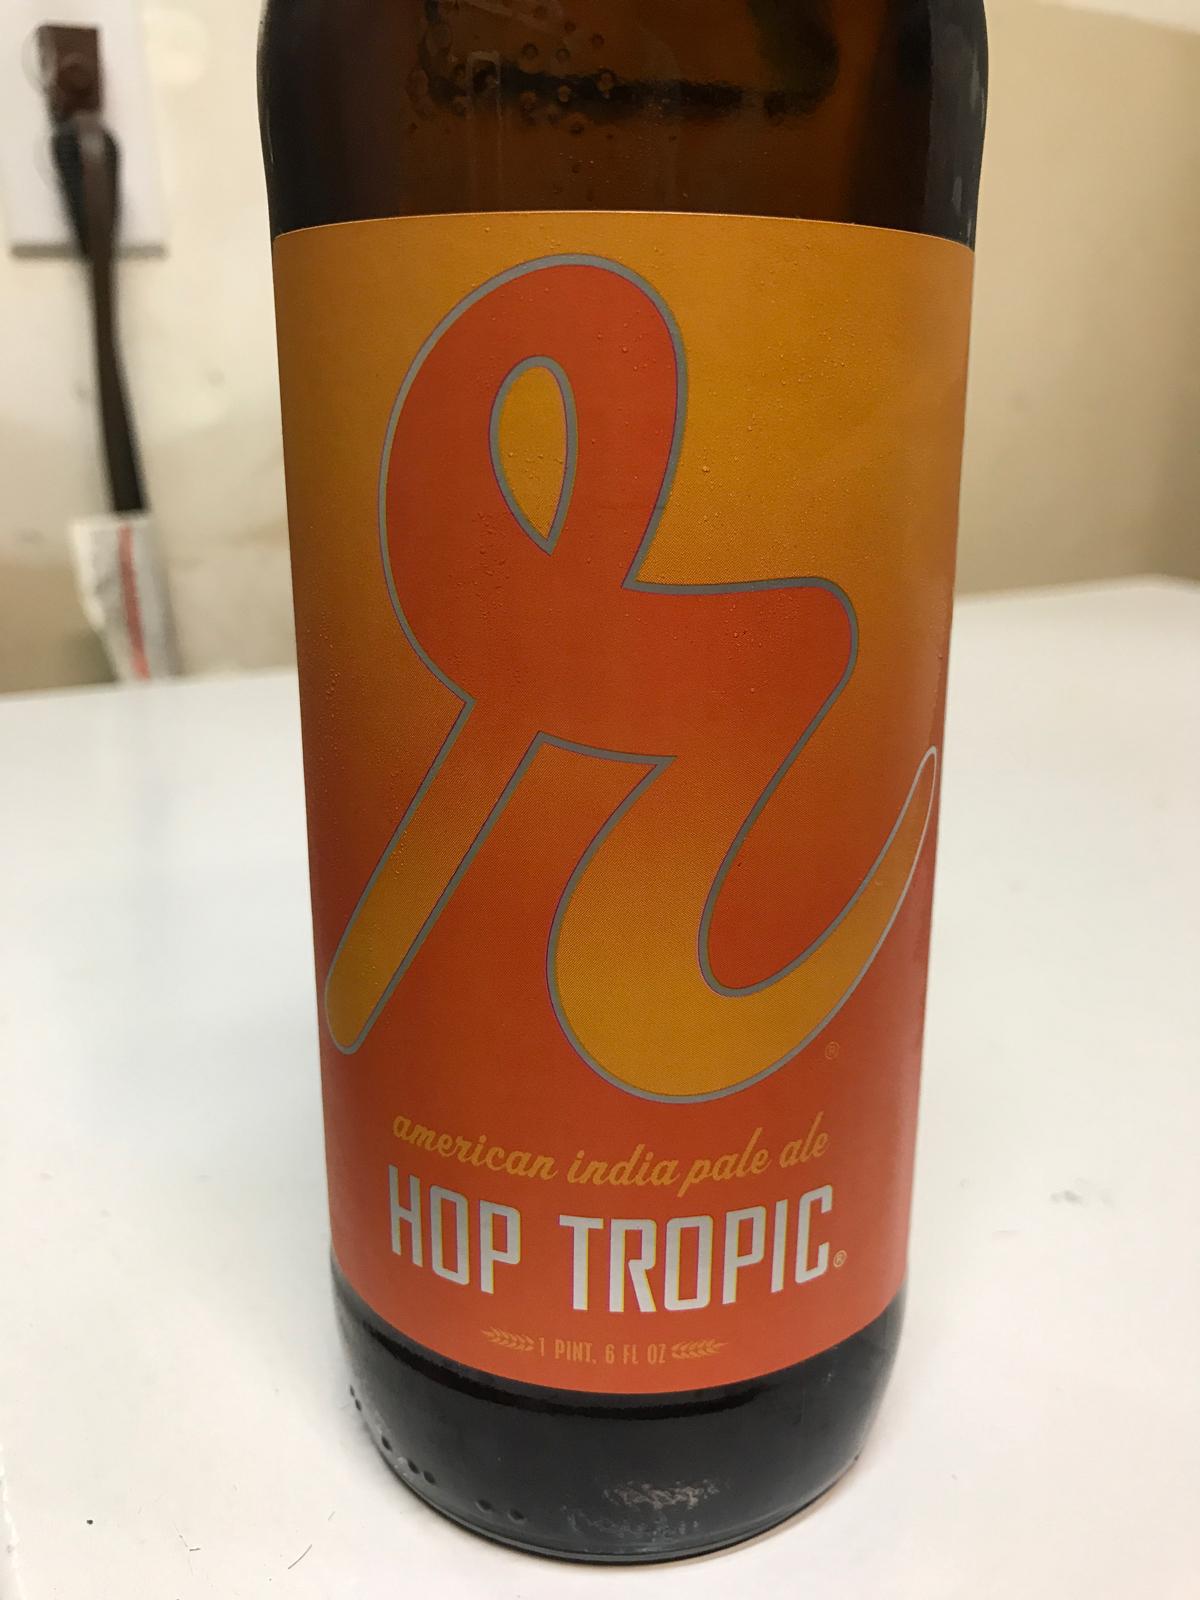 Hop Tropic